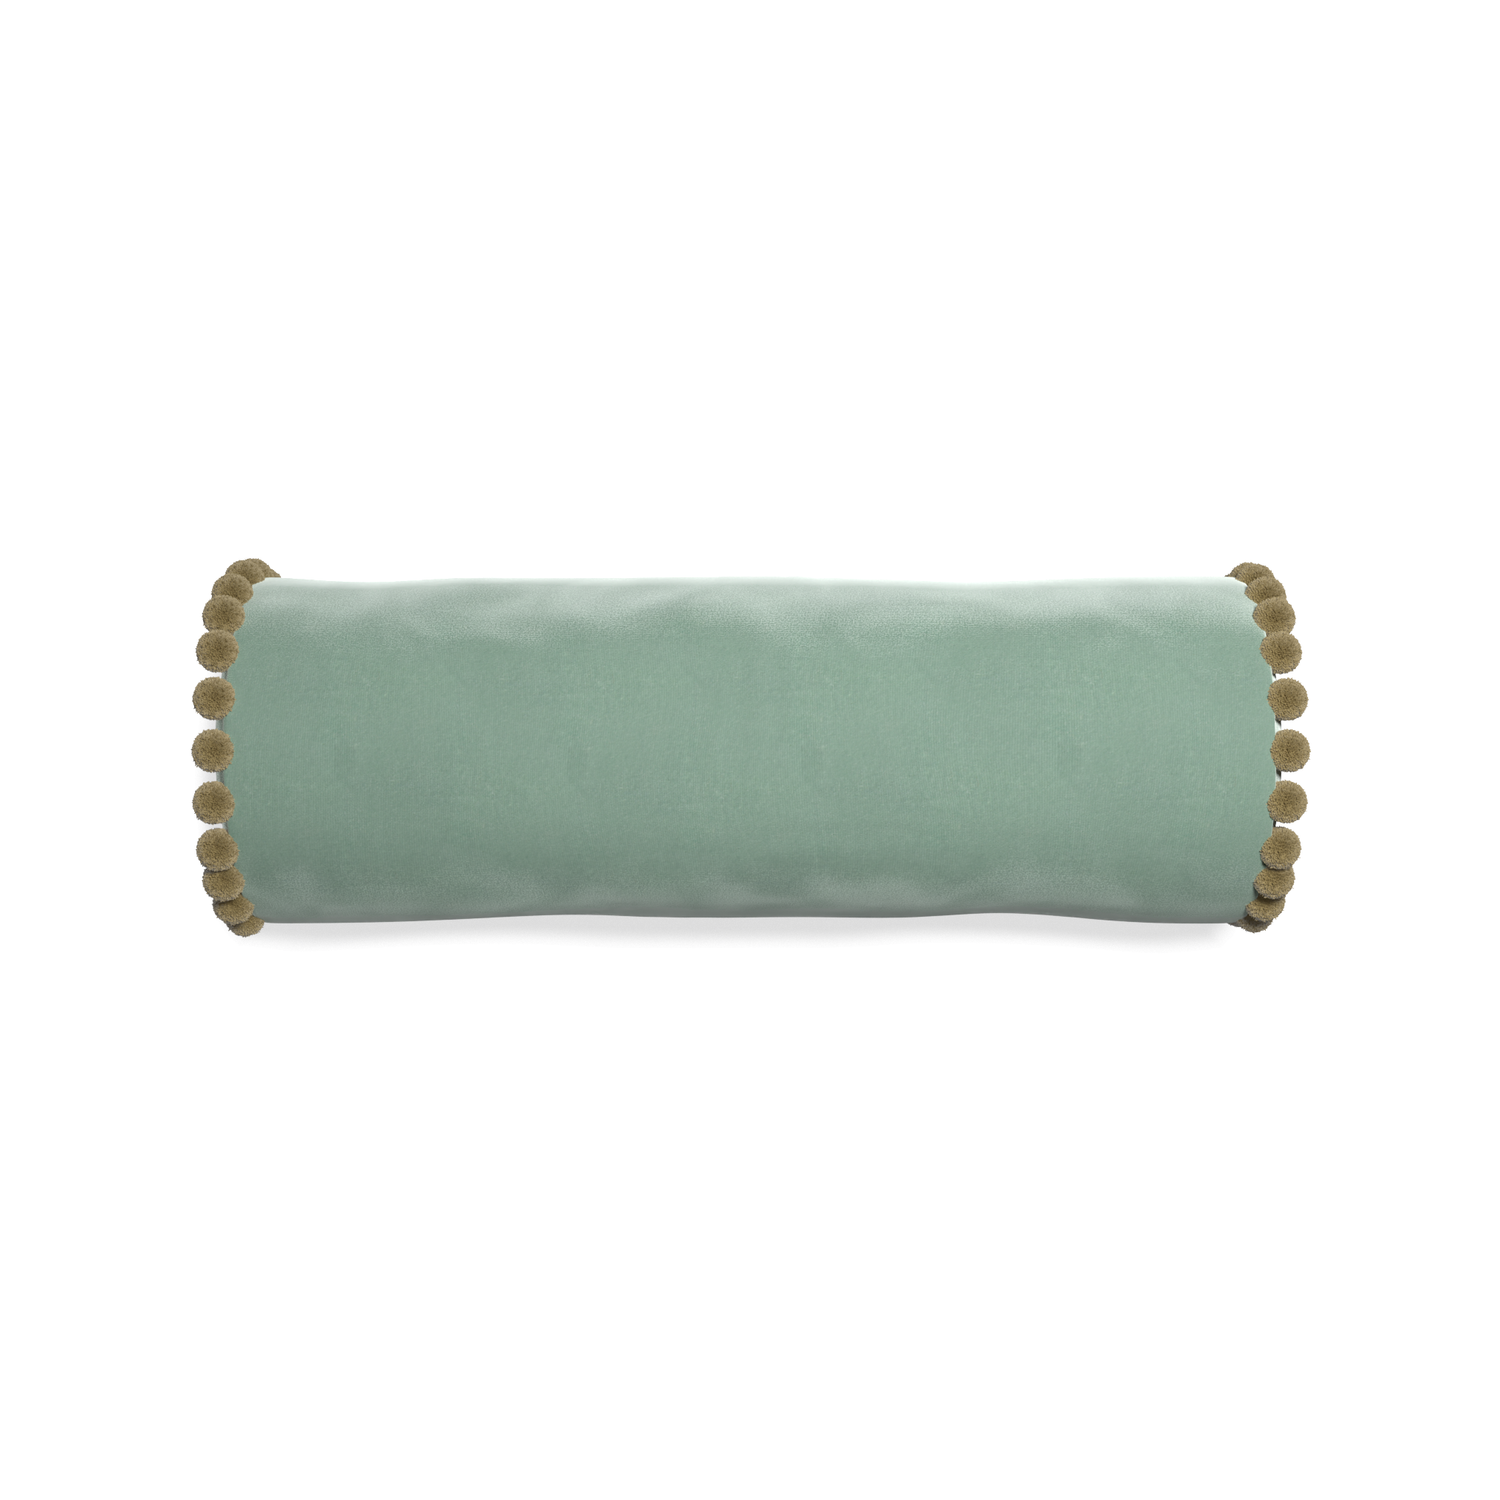 bolster blue green velvet pillow with olive green pom poms